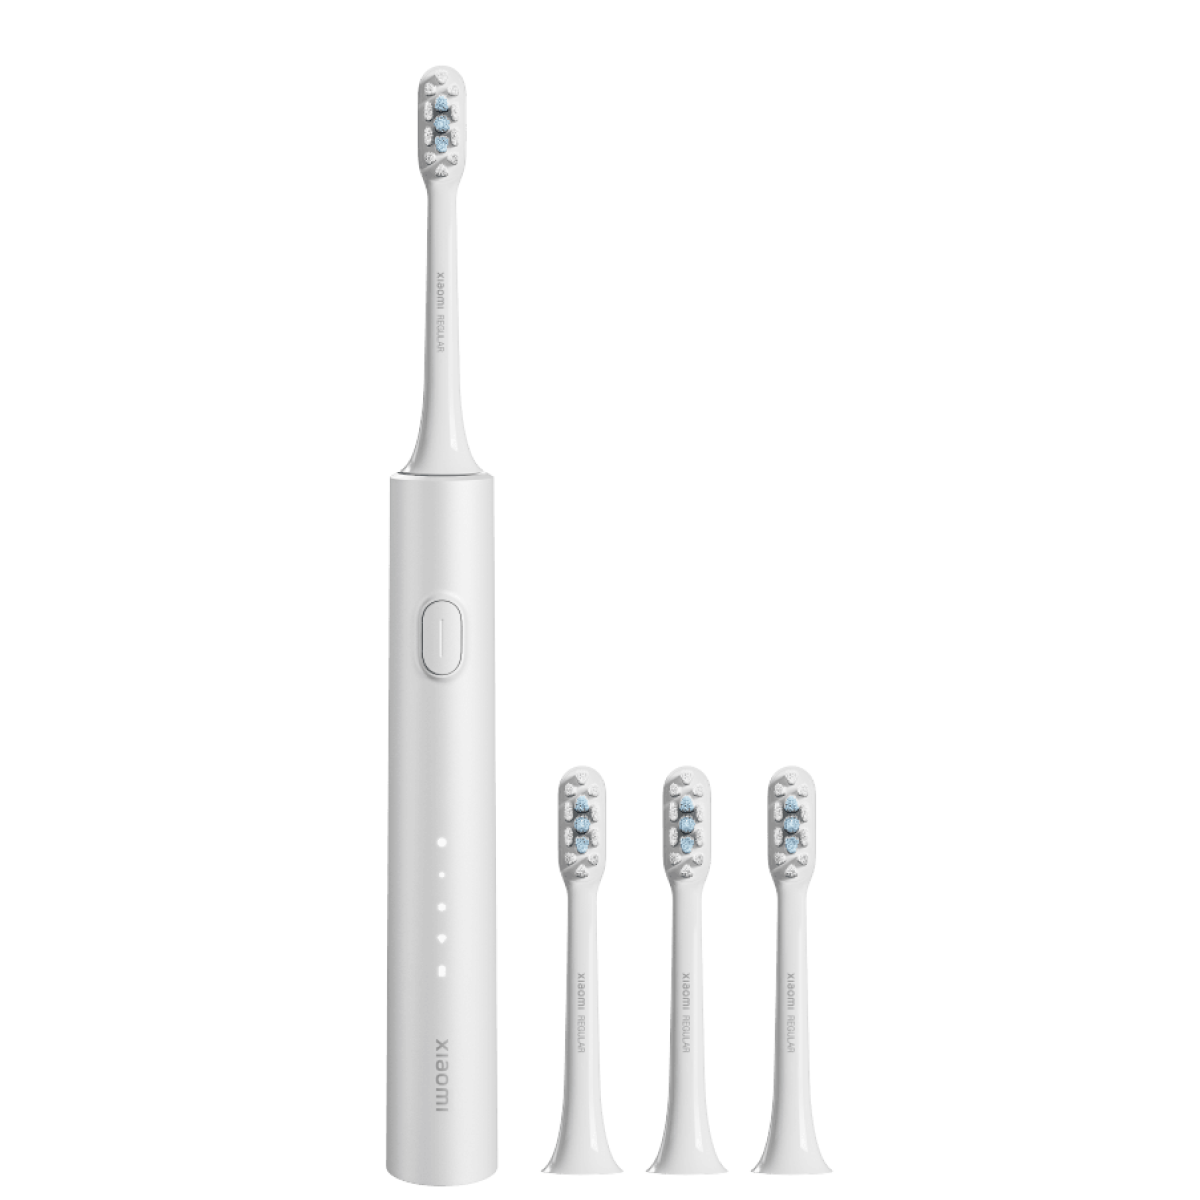 Электрическая зубная щетка Xiaomi Electric Toothbrush T302 серебристая электрическая зубная щетка xiaomi electric toothbrush t302 серебристая